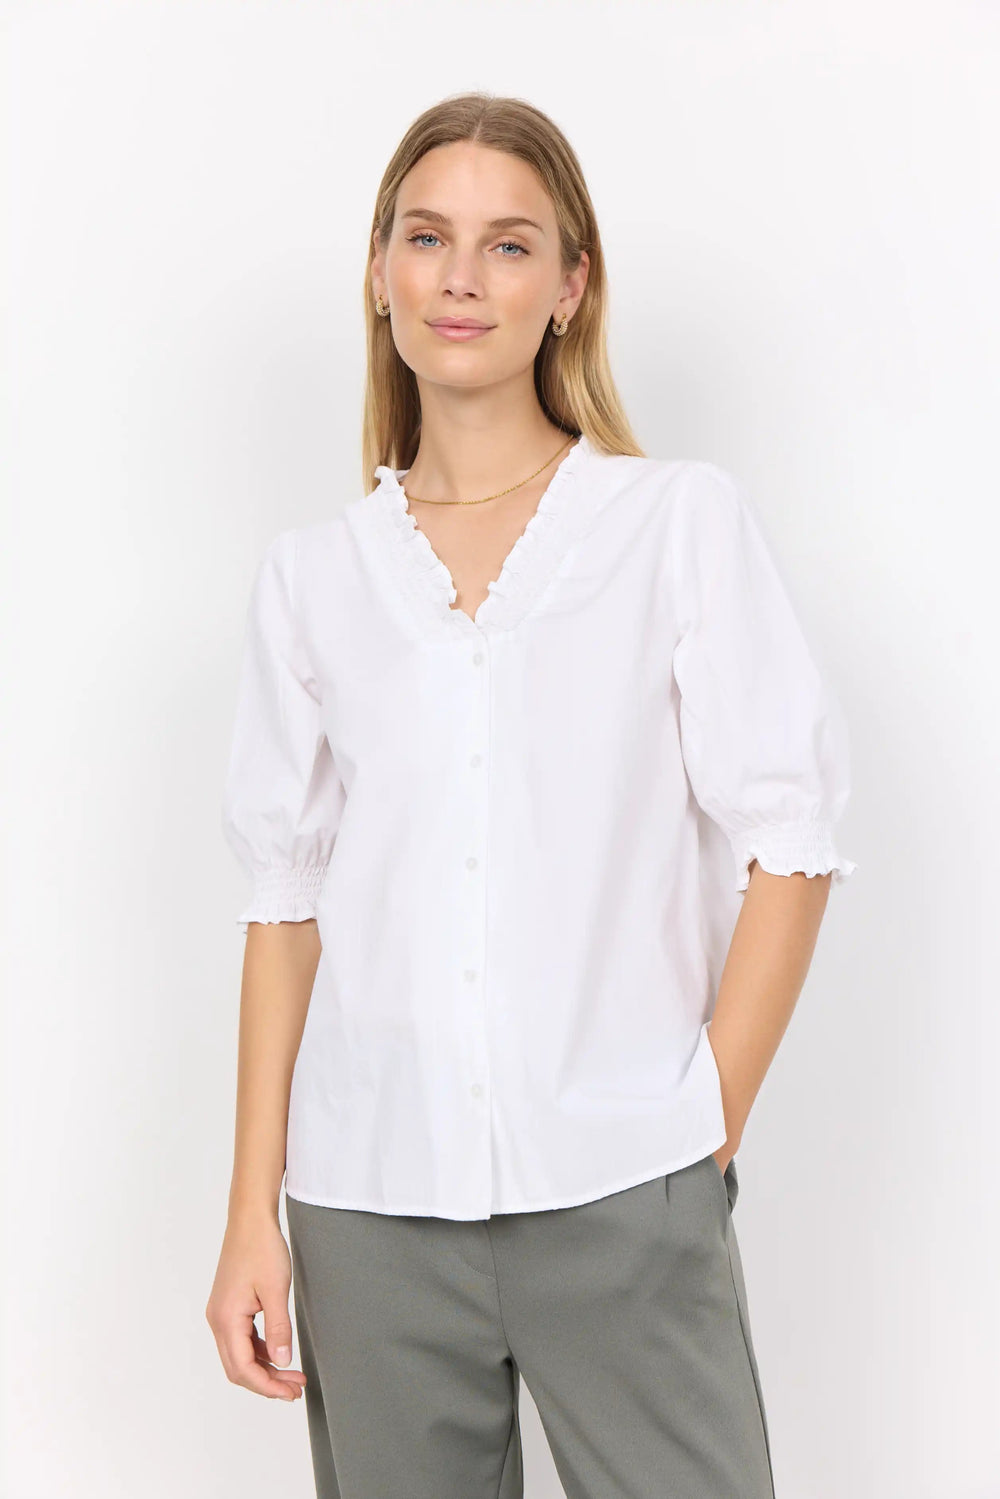 Sc-Milly 7 White | Skjorter og bluser | Smuk - Dameklær på nett